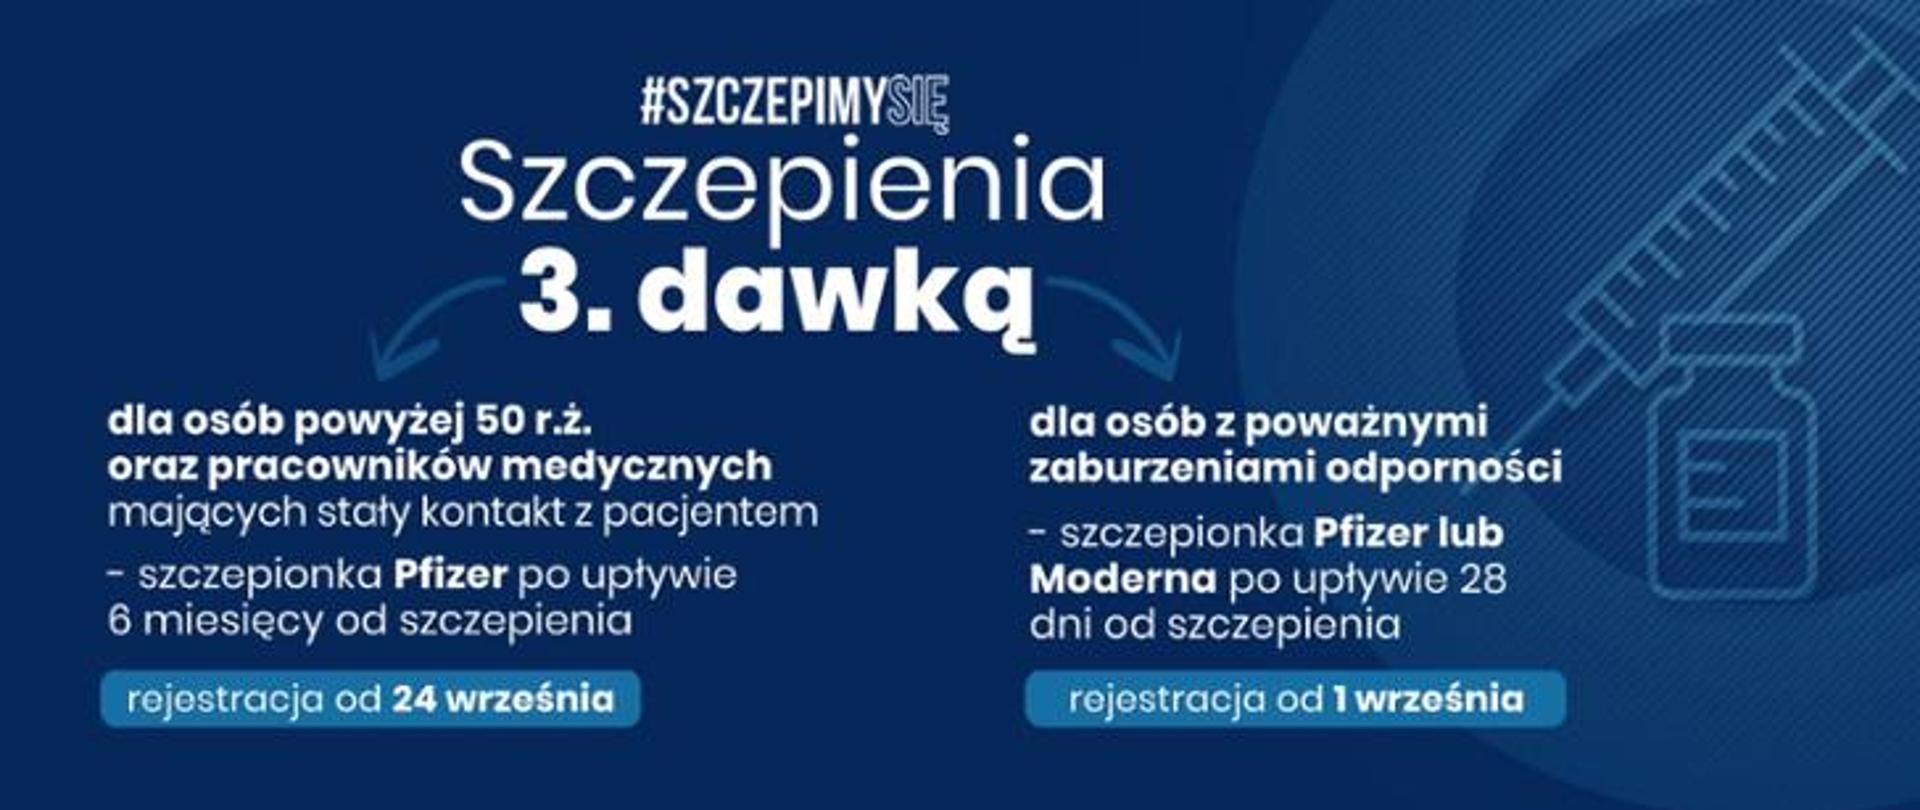 Plansza informacyjna - Przypominająca trzecia dawka szczepionki przeciw COVID-19 dla osób po 50. roku życia - Szczepienie przeciwko COVID-19 - Portal Gov.pl